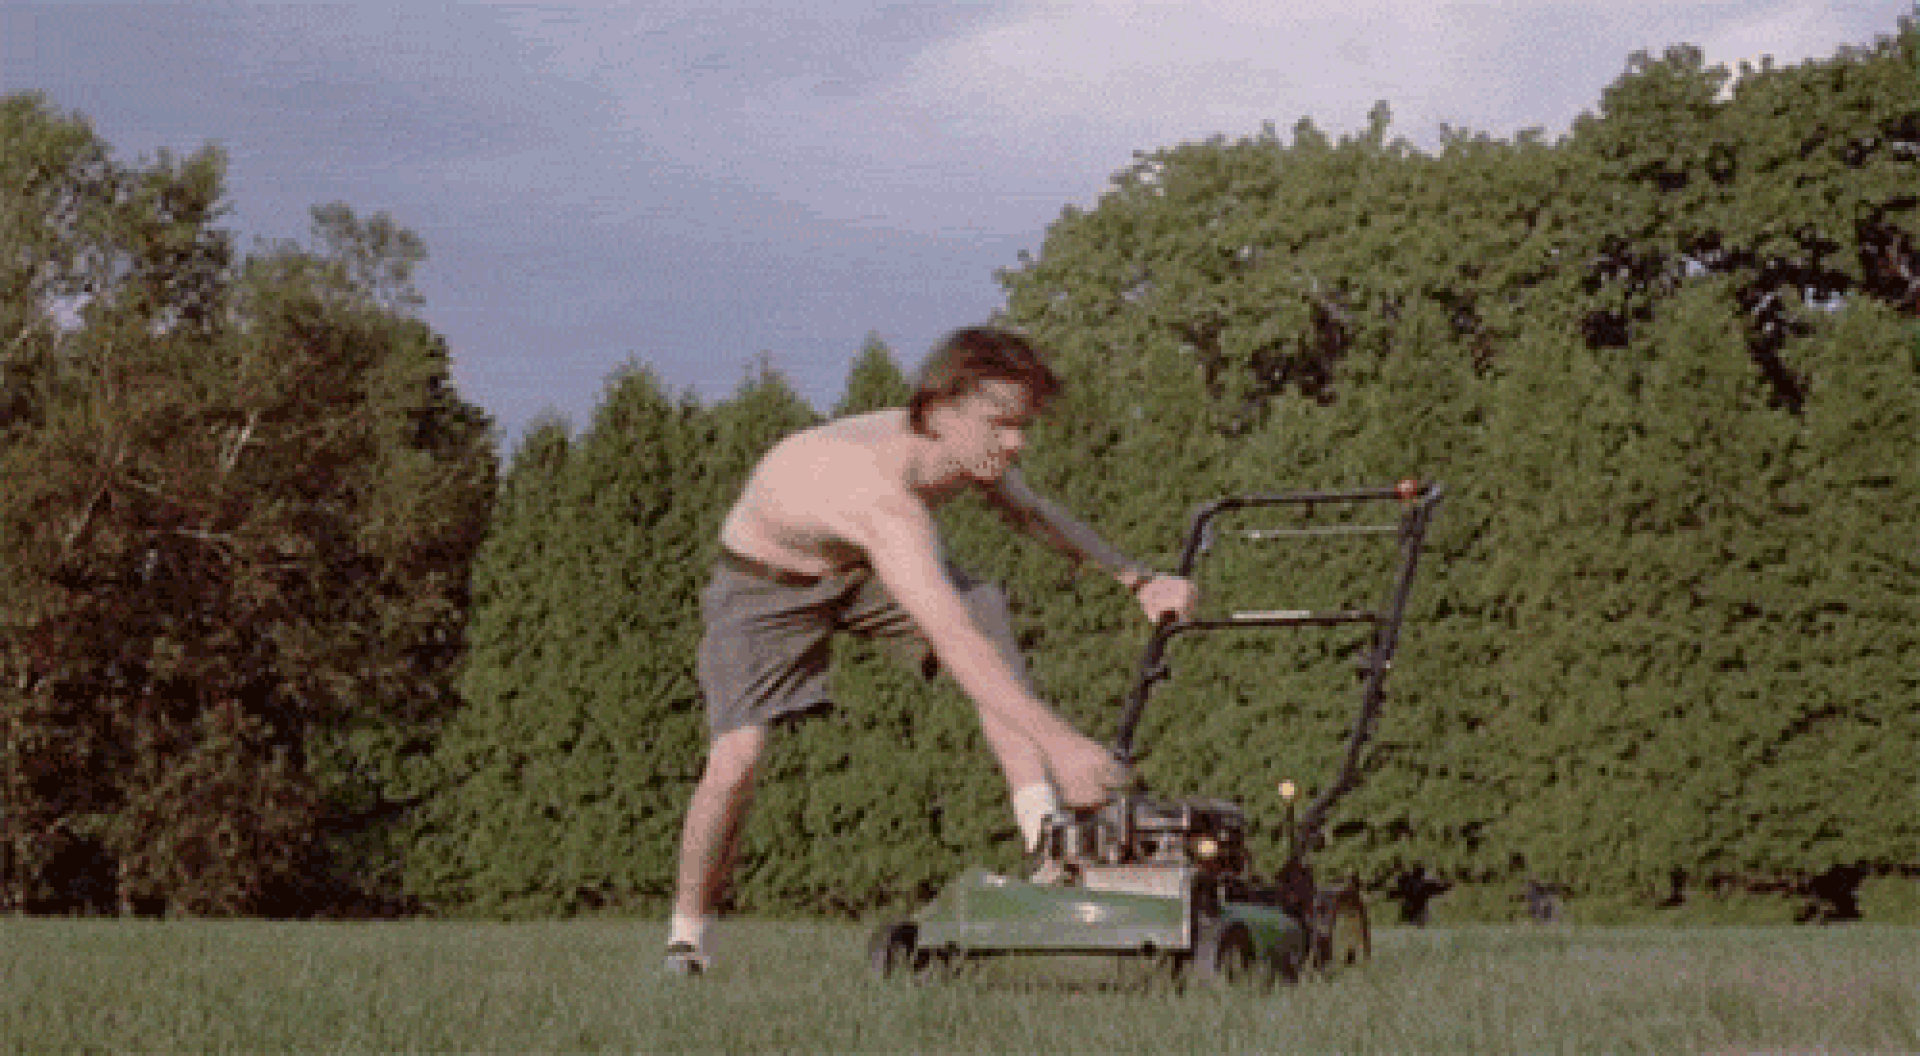 Lawn mower meme gif